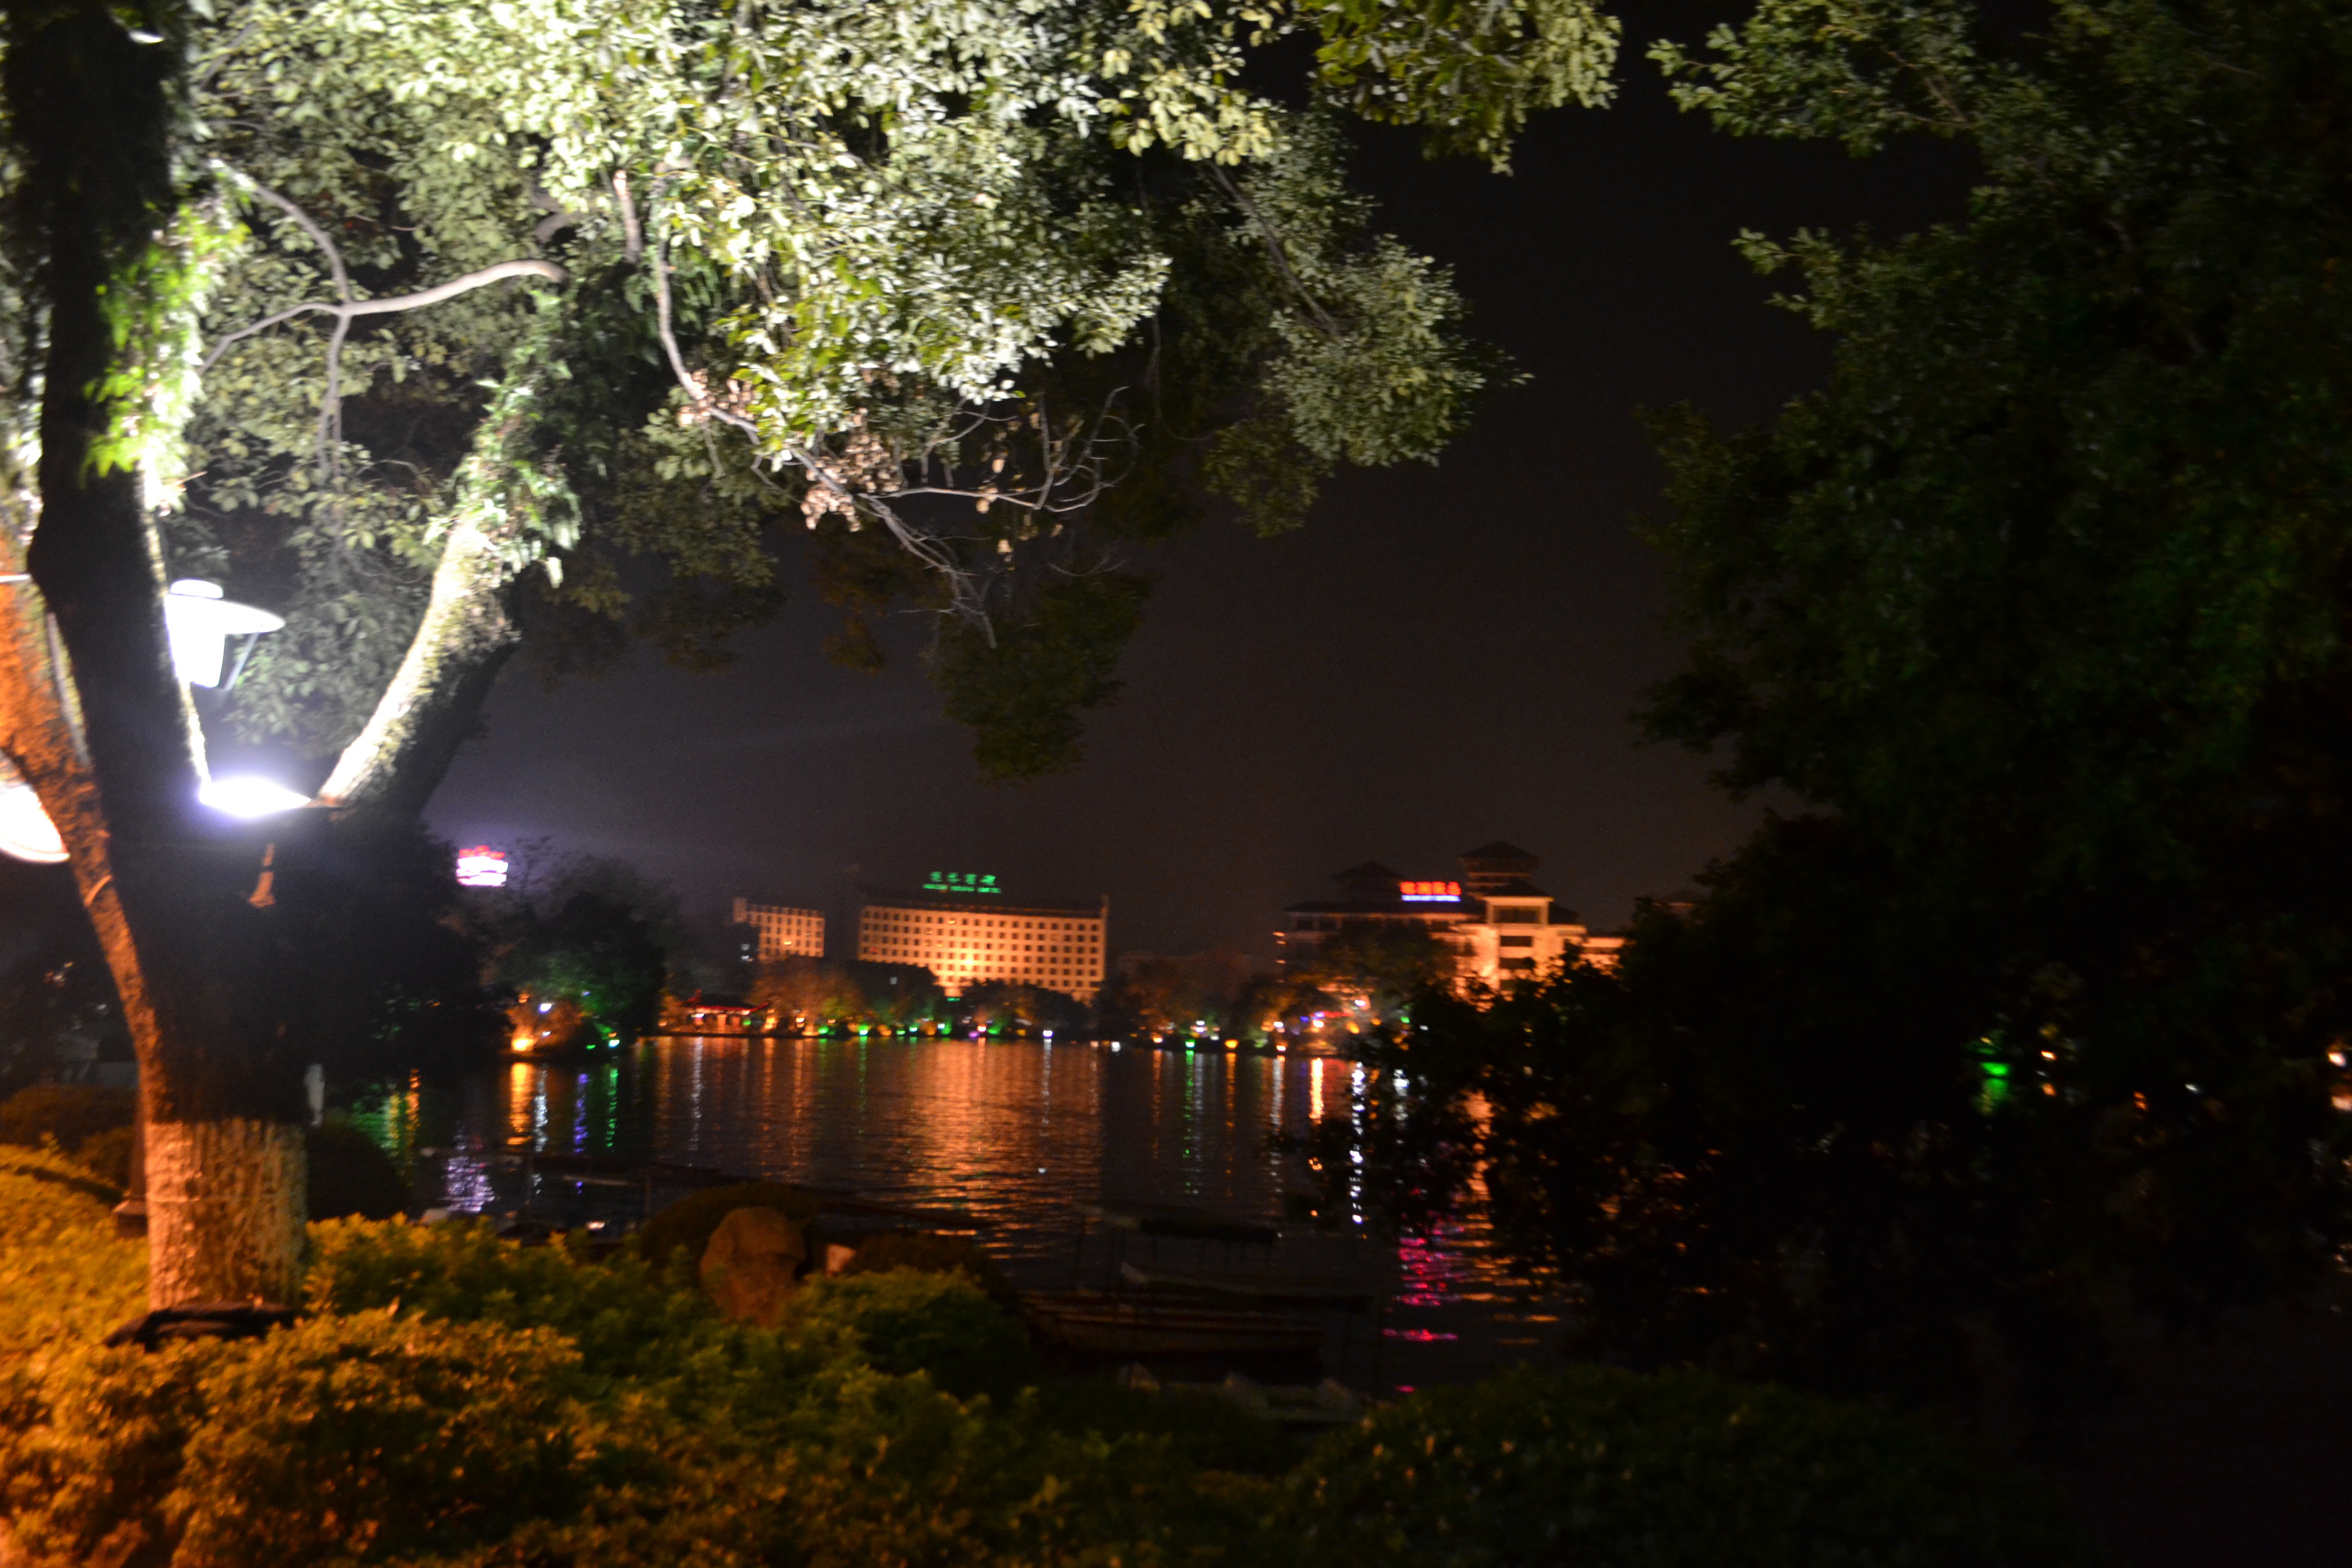 【携程攻略】桂林日月双塔景点,双塔是两江四湖的代表建筑，晚上去景色相当漂亮，湖水环绕和簇拥双塔…